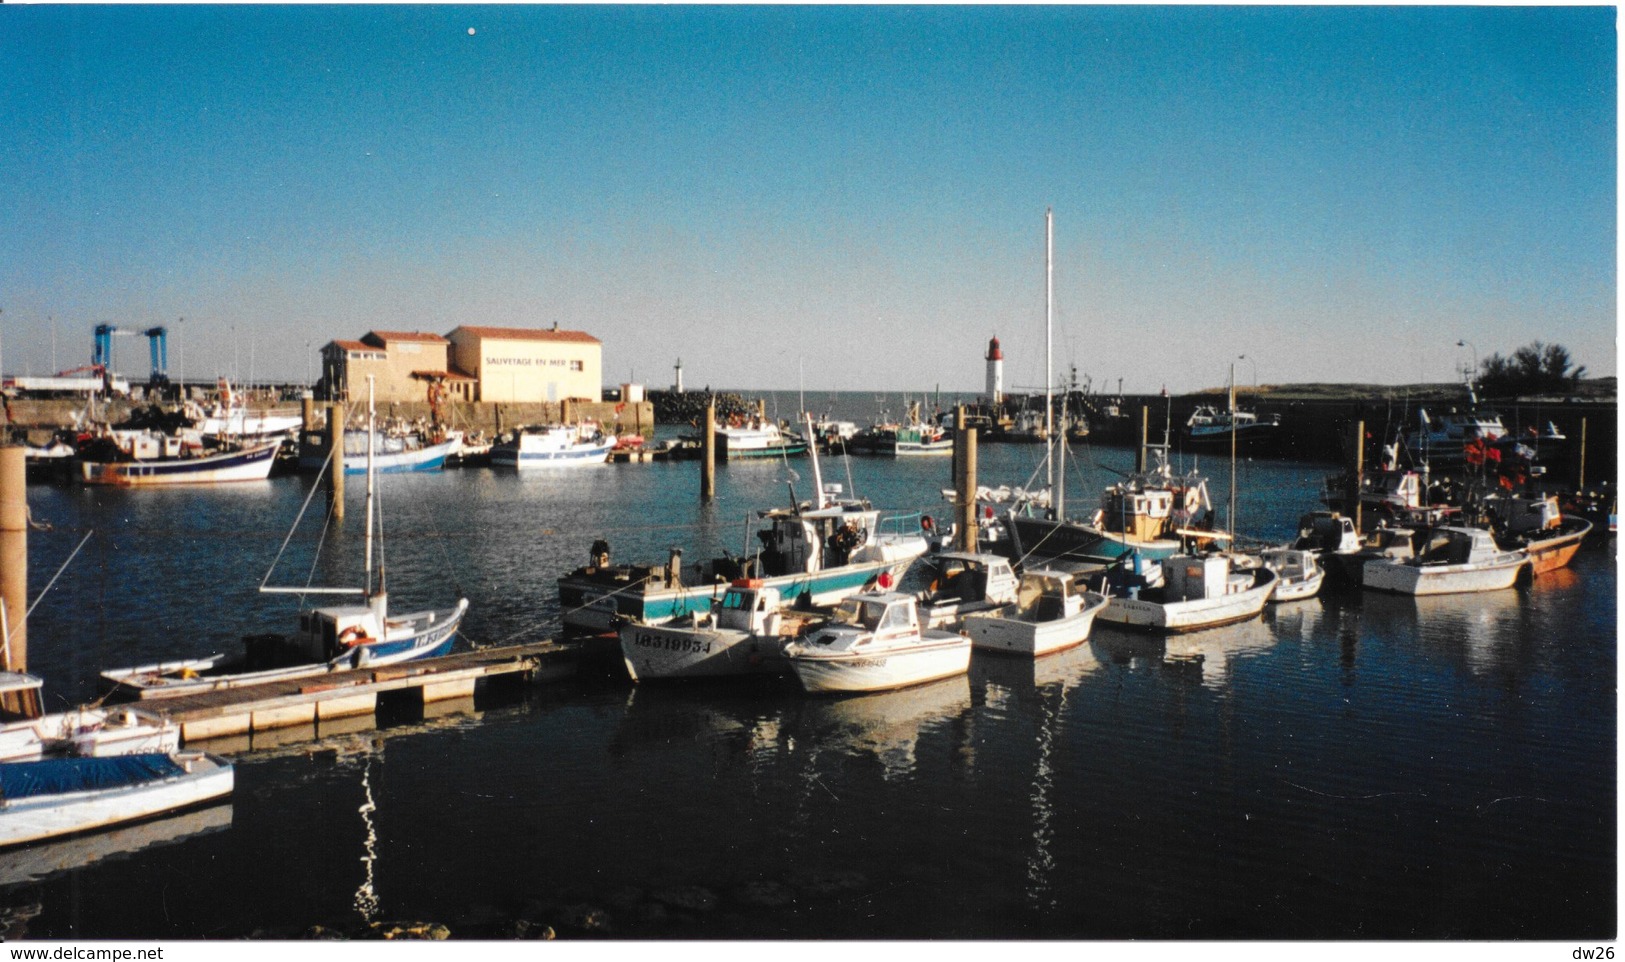 Photo Panoramique St Pierre D'Oléron (La Cotinière) Port Avec Petits Bateaux De Pêche, Sauvetage En Mer - Plaatsen